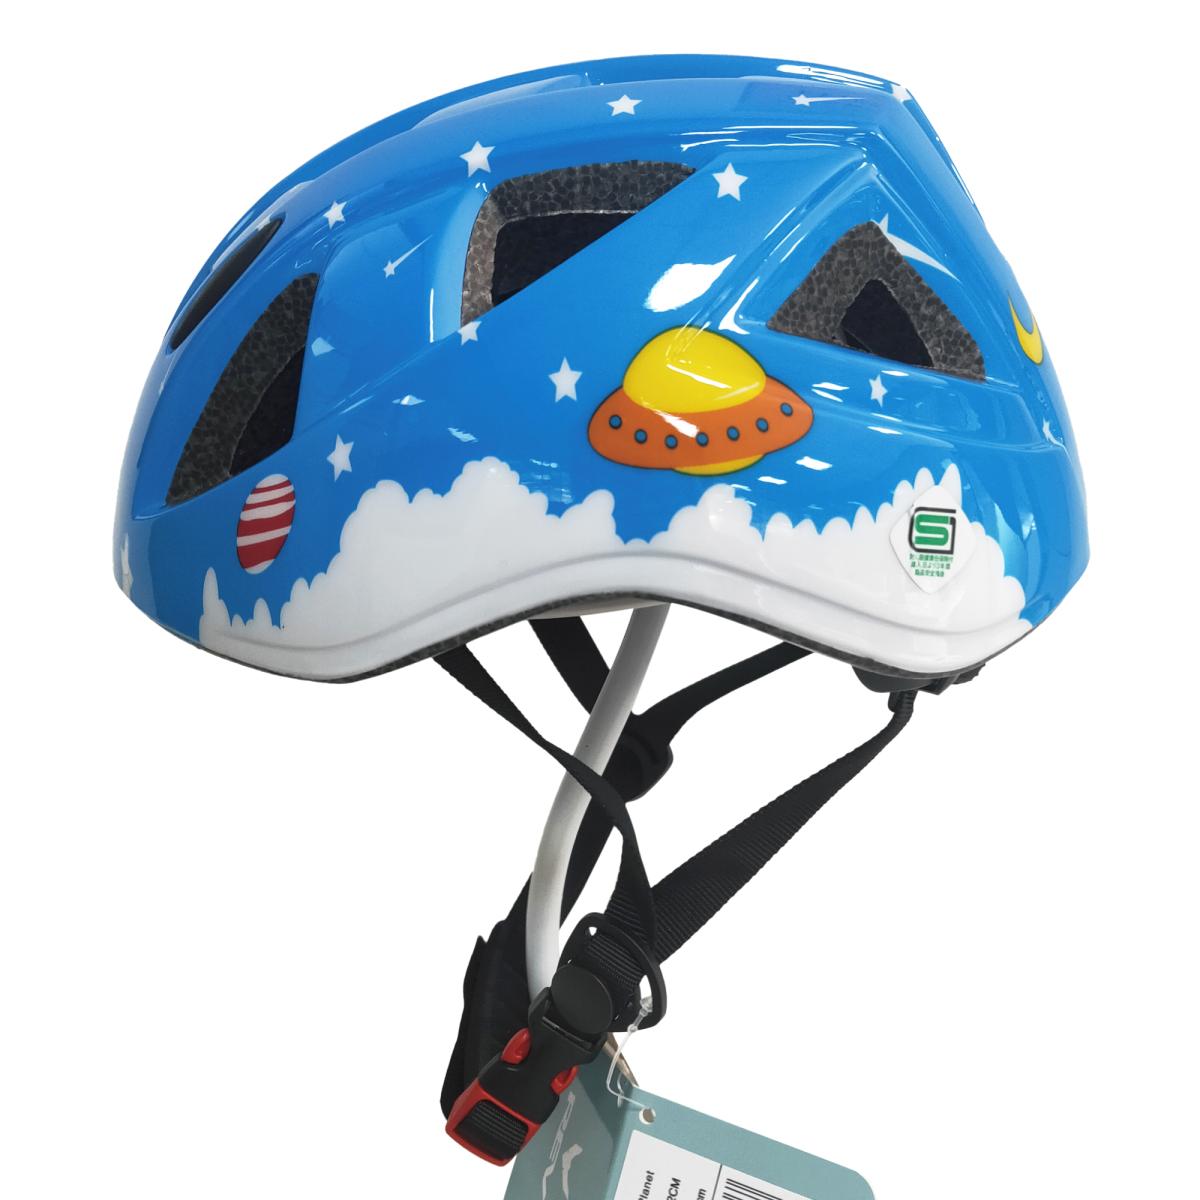 レブスポーツ 自転車用インモールドヘルメット 子供用 XS/S プラネット/ブルー